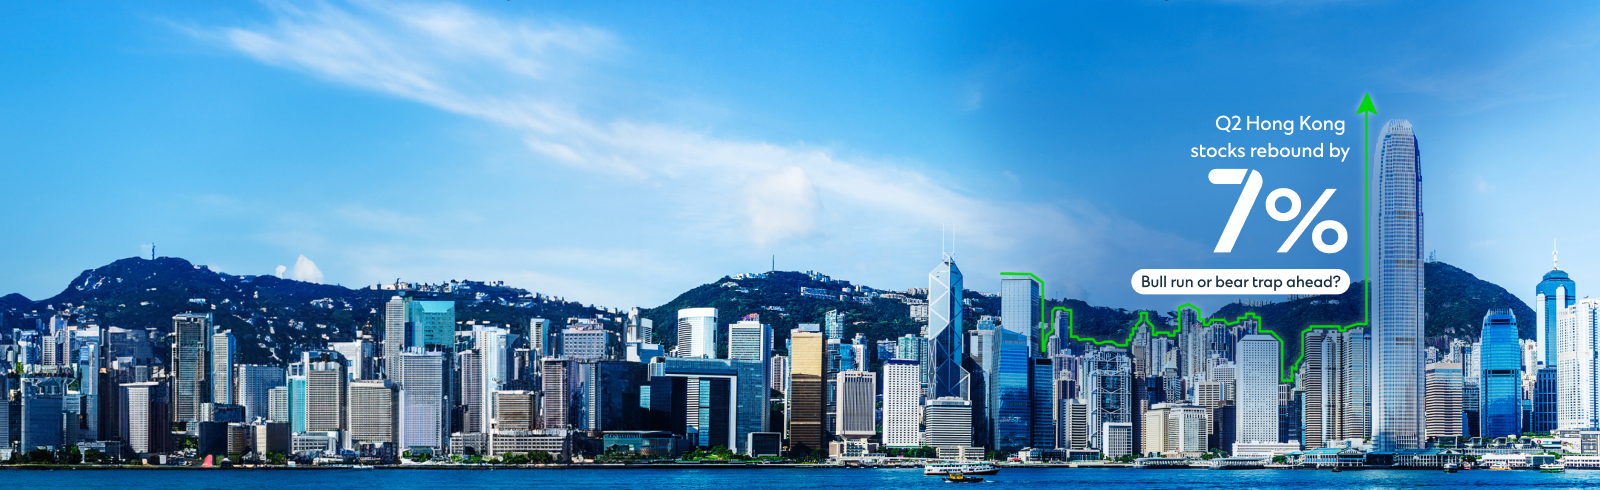 Sxa reactivation hk stock exchange webpage article top banner x en